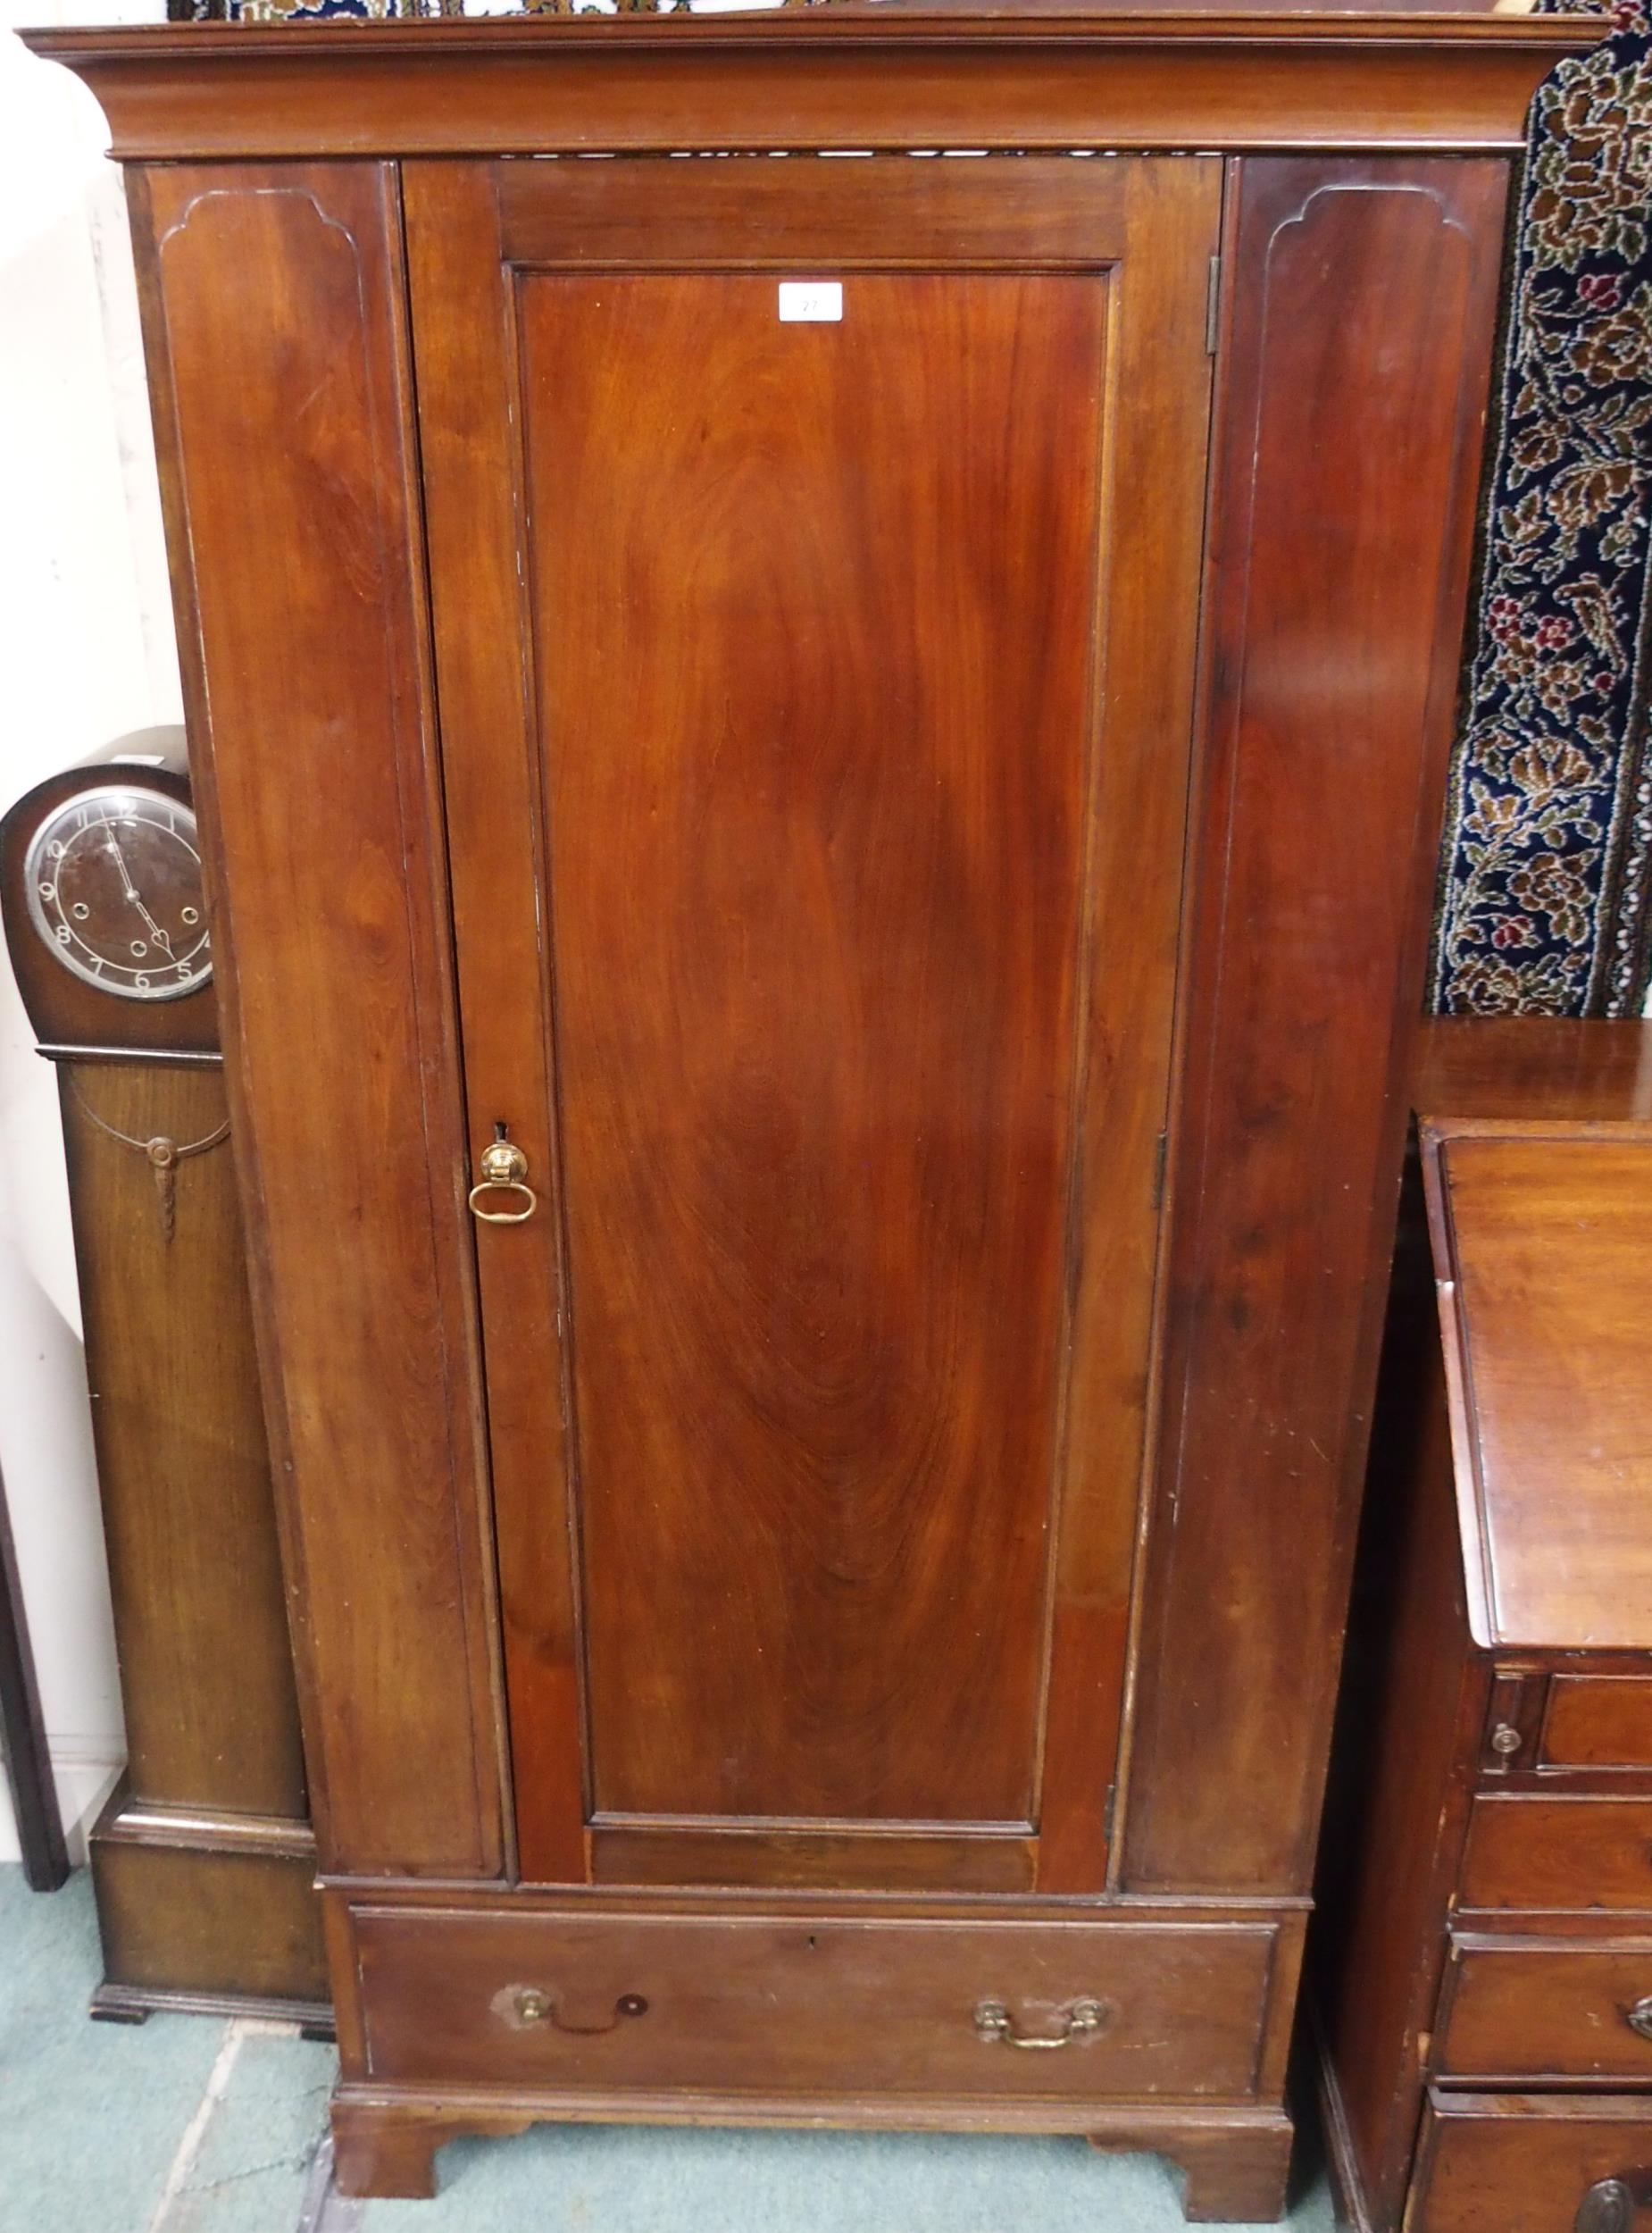 A Victorian mahogany single door wardrobe, 182cm high x 95cm wide x 46cm deep Condition Report: